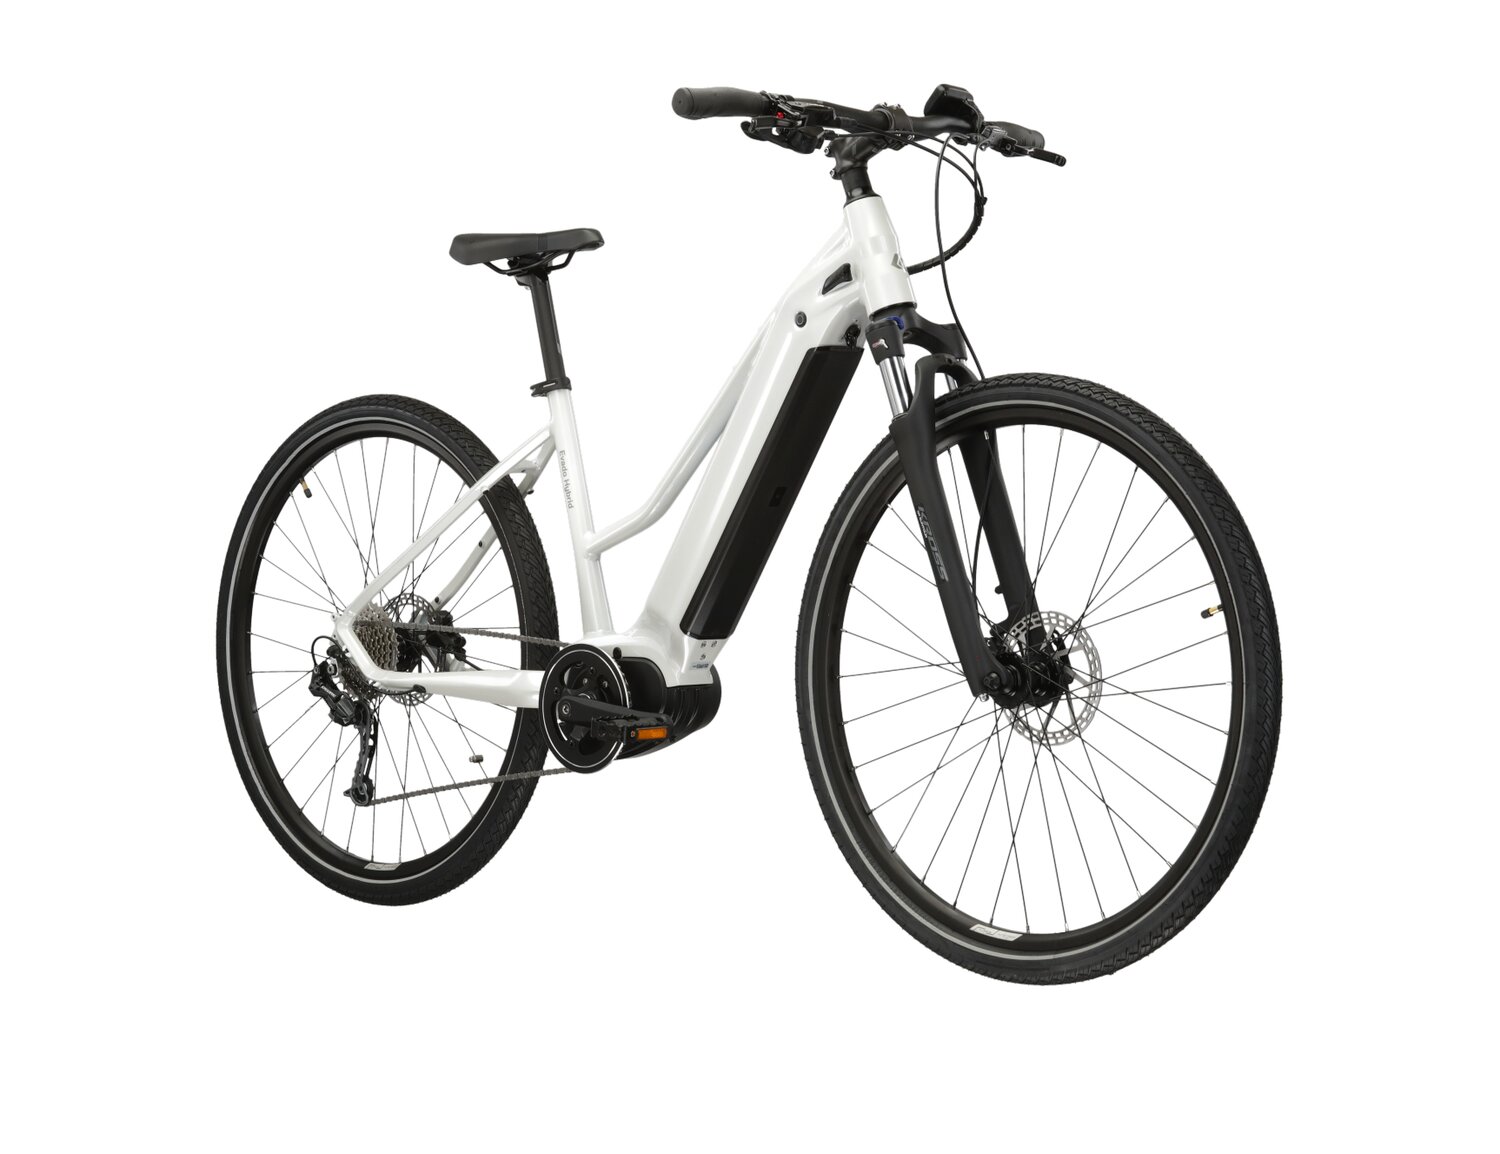  Elektryczny rower crossowy KROSS Evado Hybrid 3.0 882 Wh UNI na aluminiowej ramie w kolorze perłowym wyposażony w osprzęt Shimano i napęd elektryczny Bafang